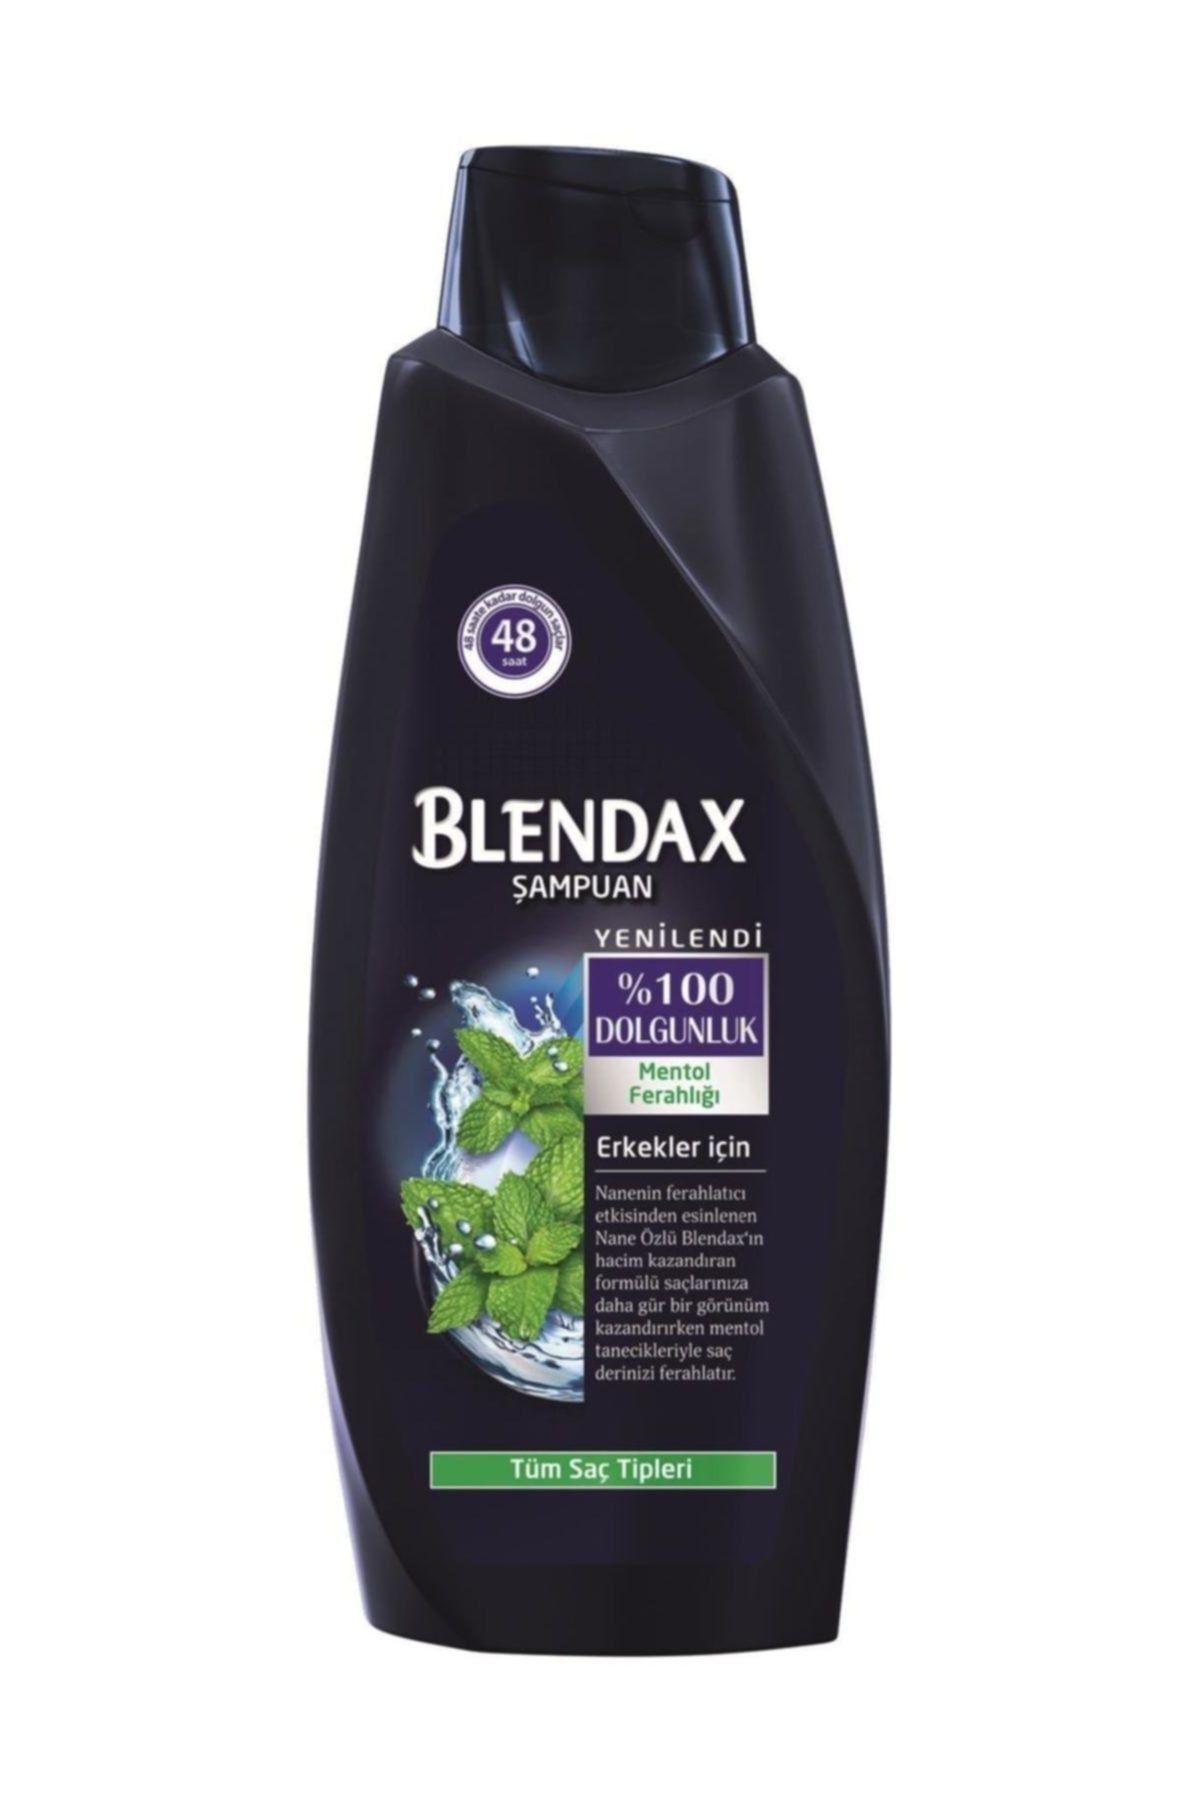 Blendax Erkekler İçin Mentollü Şampuan 500 ml